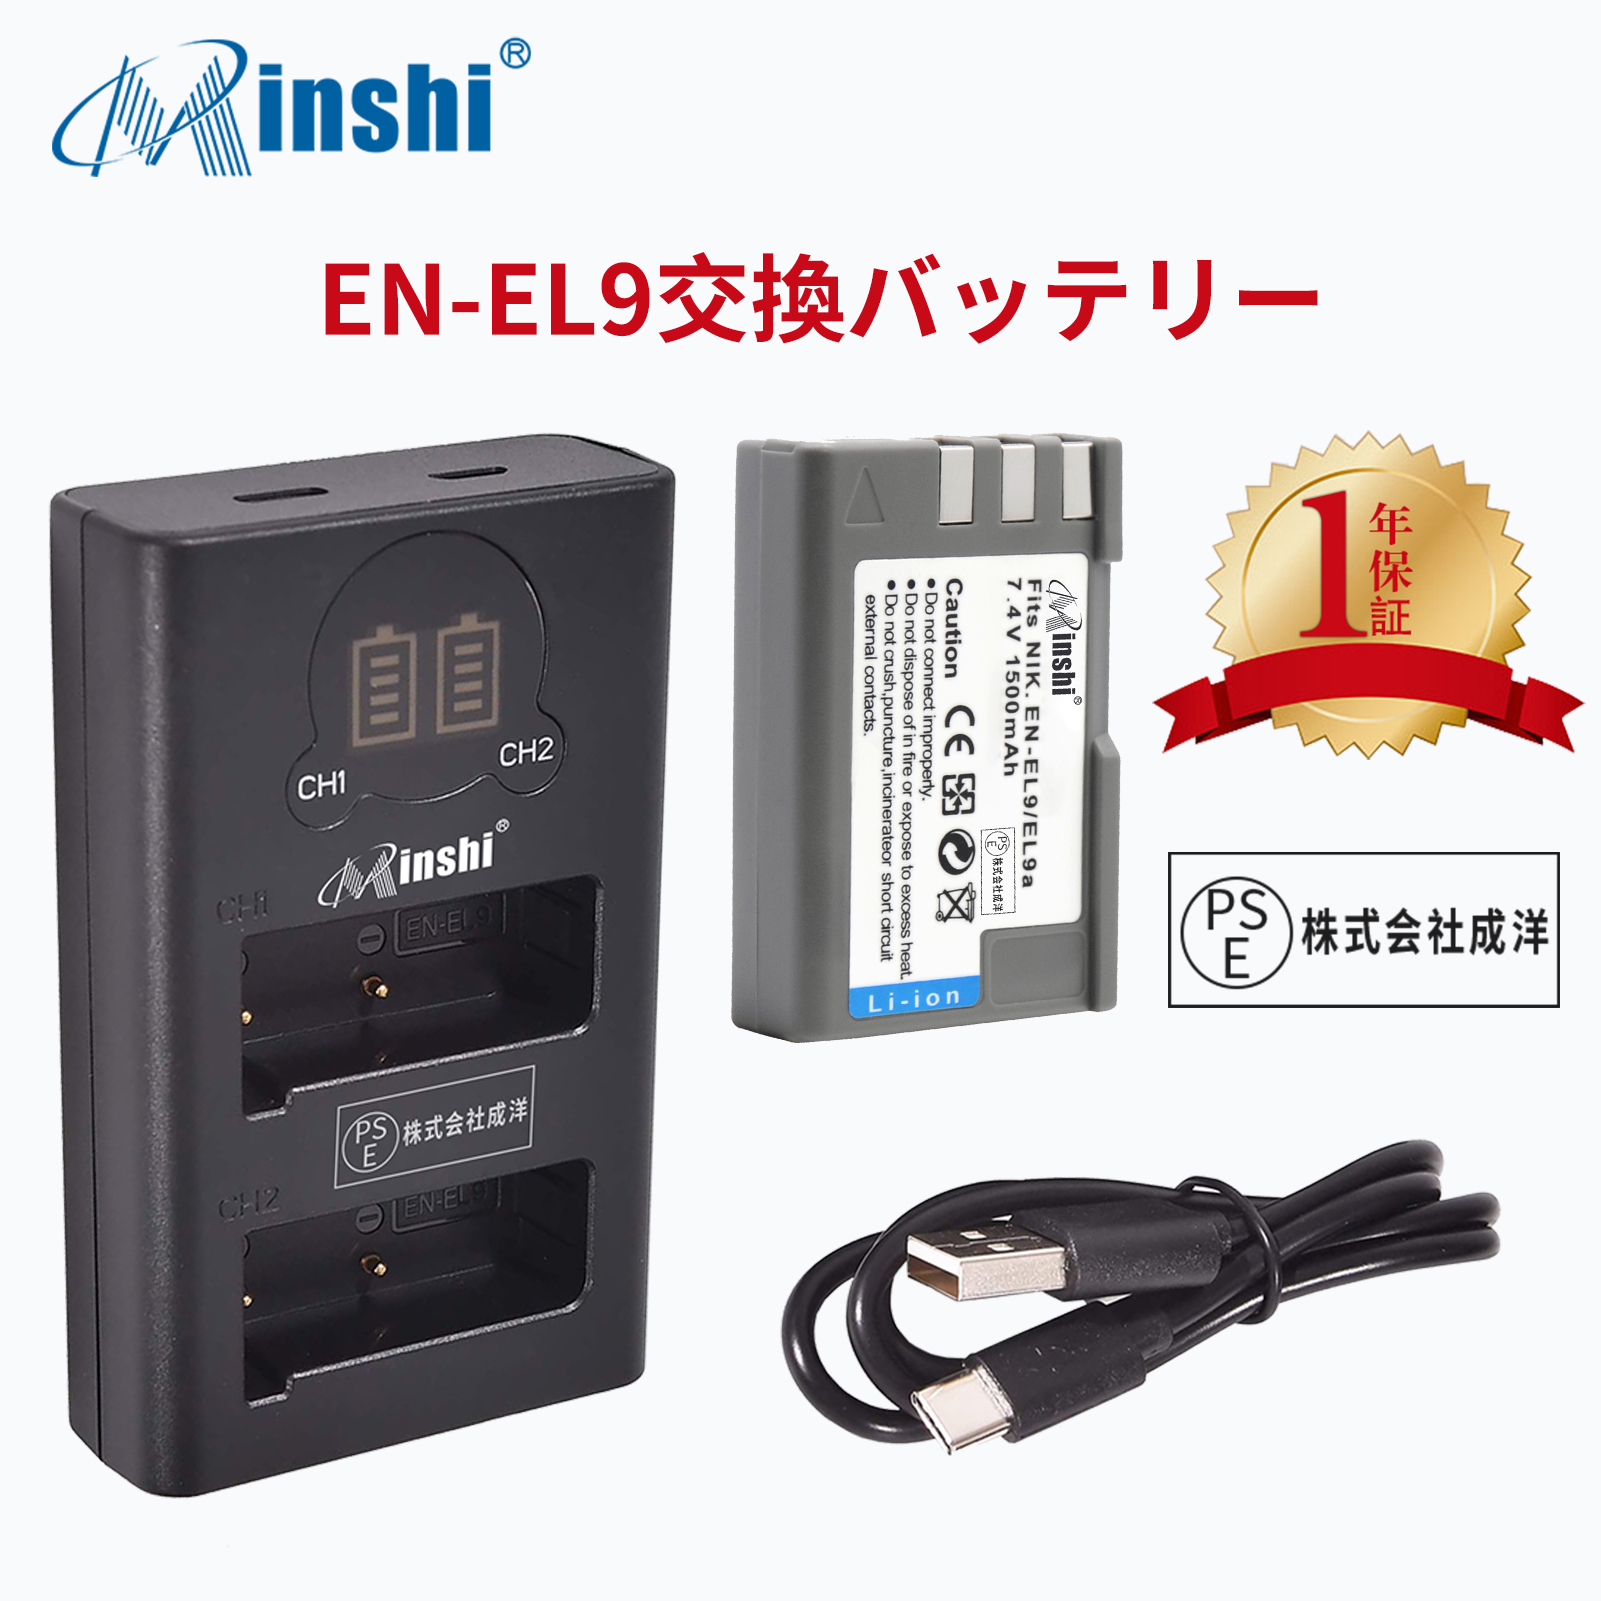 【1年保証】minshi NIKON EN-EL9【1500mAh 7.4V】 【互換急速USBチャージャー】PSE認定済 高品質EN-EL9 EN-EL9a EN-EL9e互換バッテリーPHB